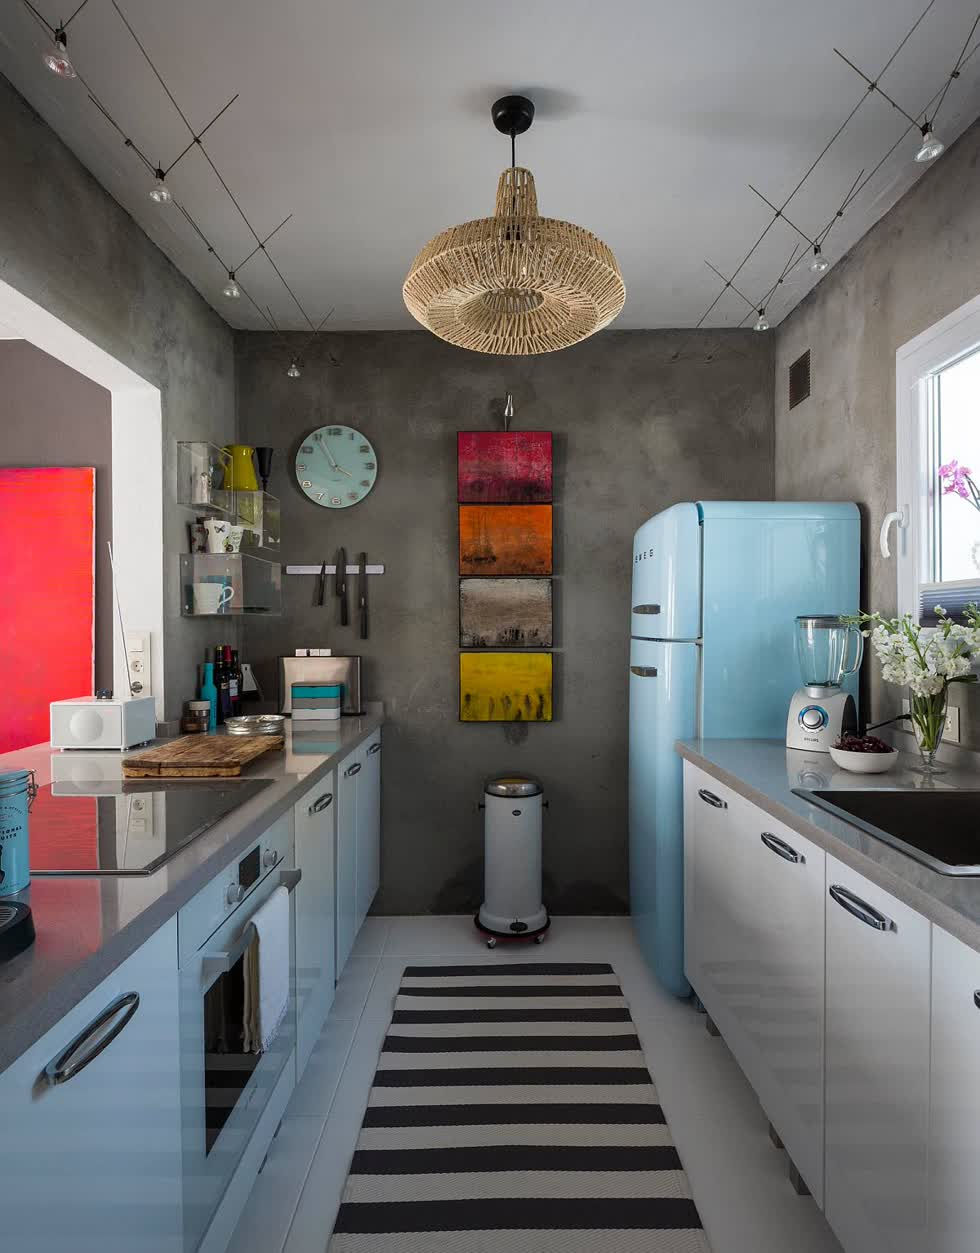   Sử dụng tủ lạnh cổ điển để thêm màu sắc cho nhà bếp nhỏ chiết trung với những bức tường bê tông.  